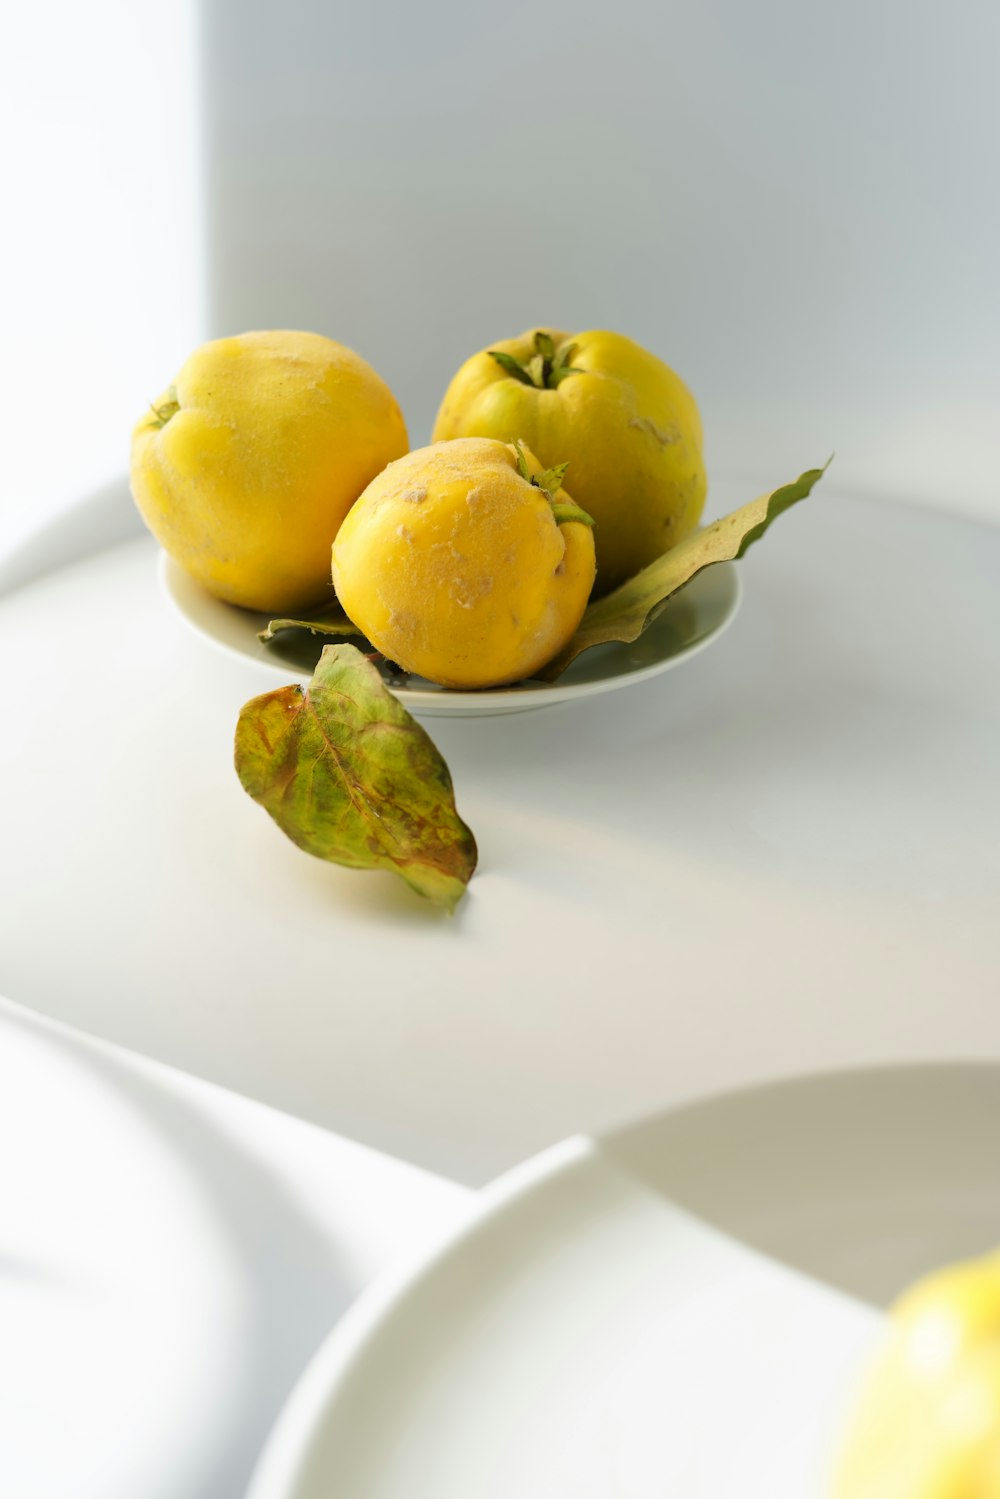 레몬 3개와 녹색 잎을 얹은 흰색 접시